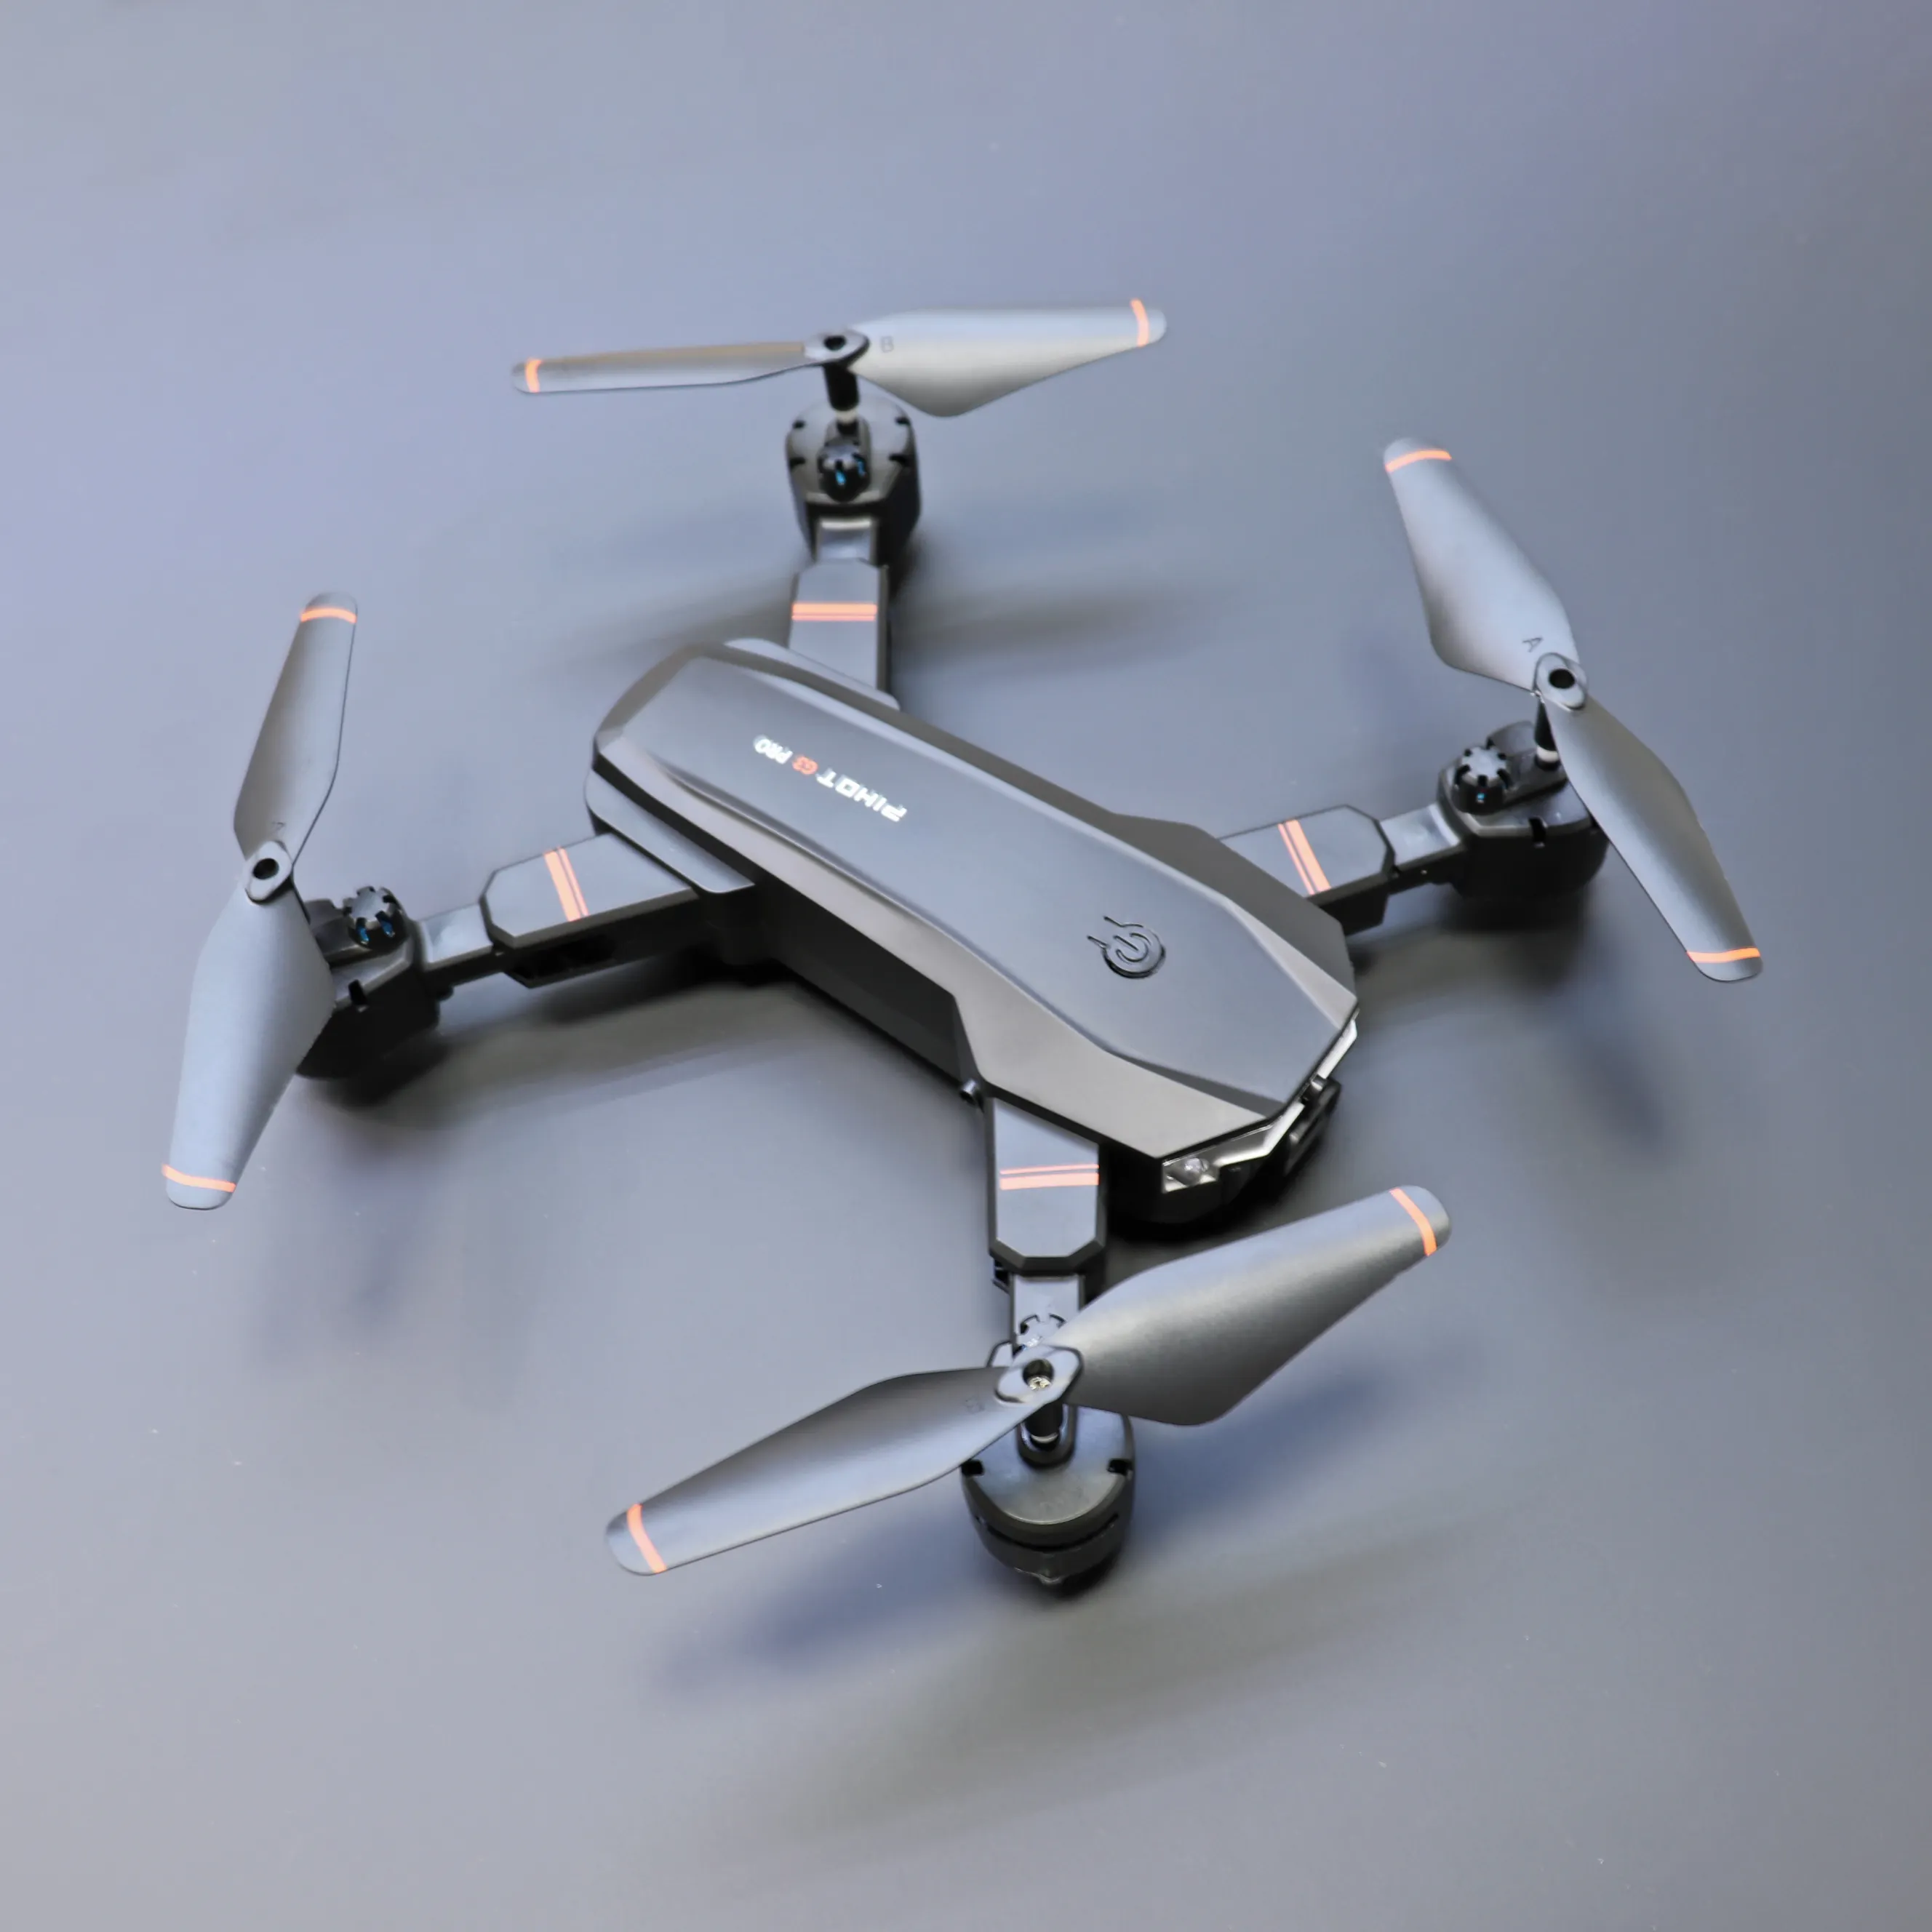 2023 Gps 3-Achsen-Gimbal-Drohne Kleine Größe mit Kamera-Renn drohnen ohne Rtf Fpv Rc Quadcopter Unbemanntes Luftfahrzeug (Uav)